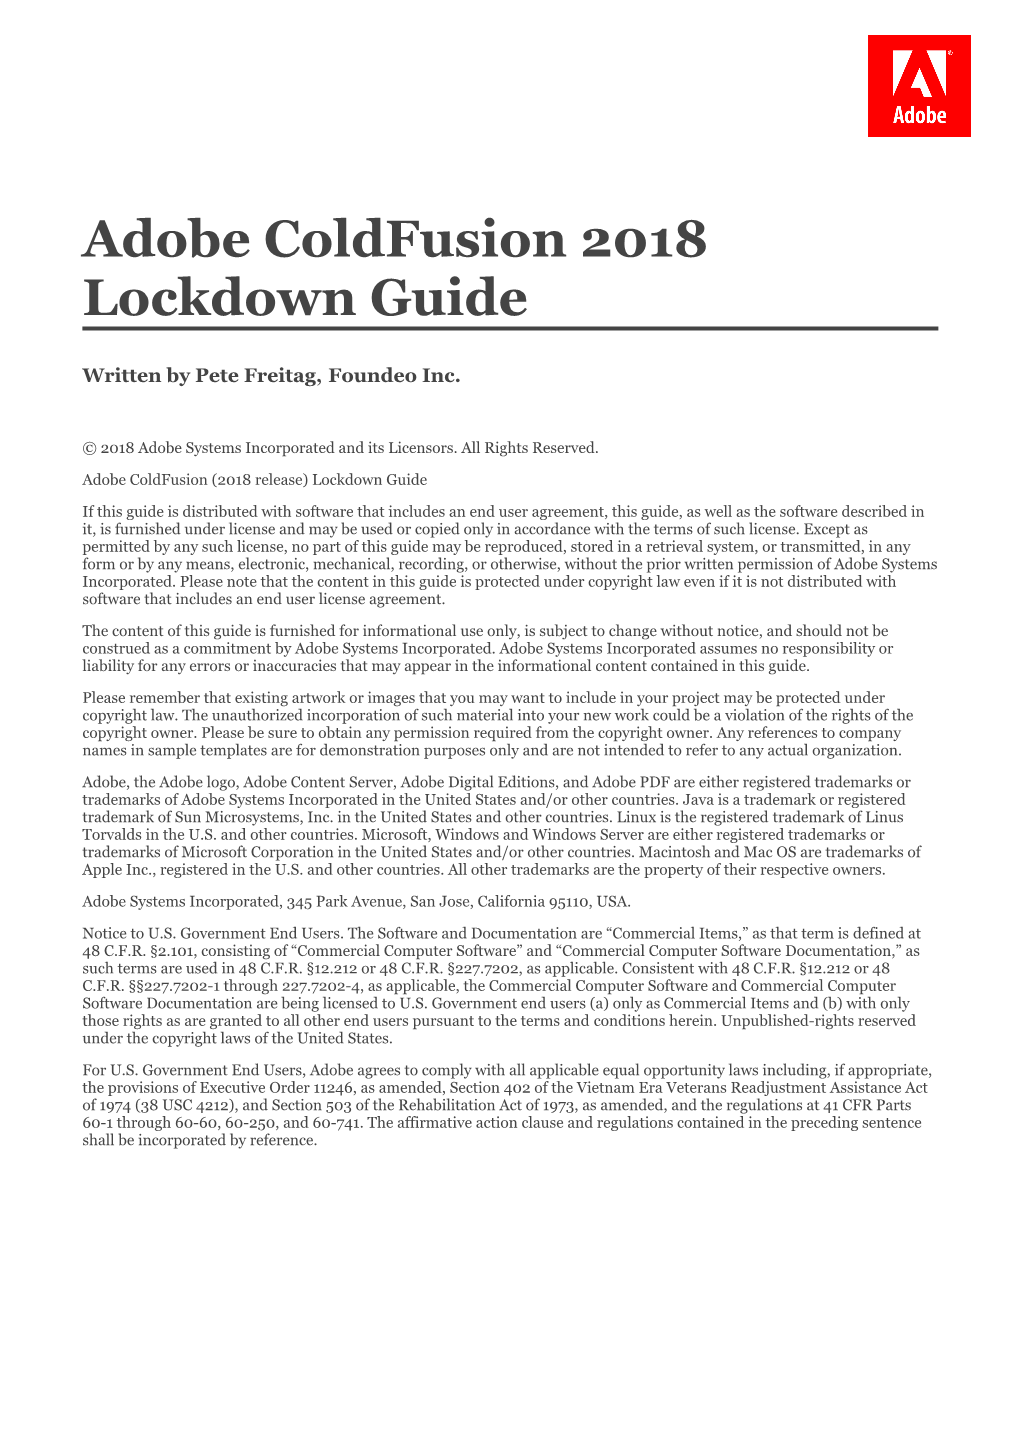 Adobe Coldfusion 2018 Lockdown Guide